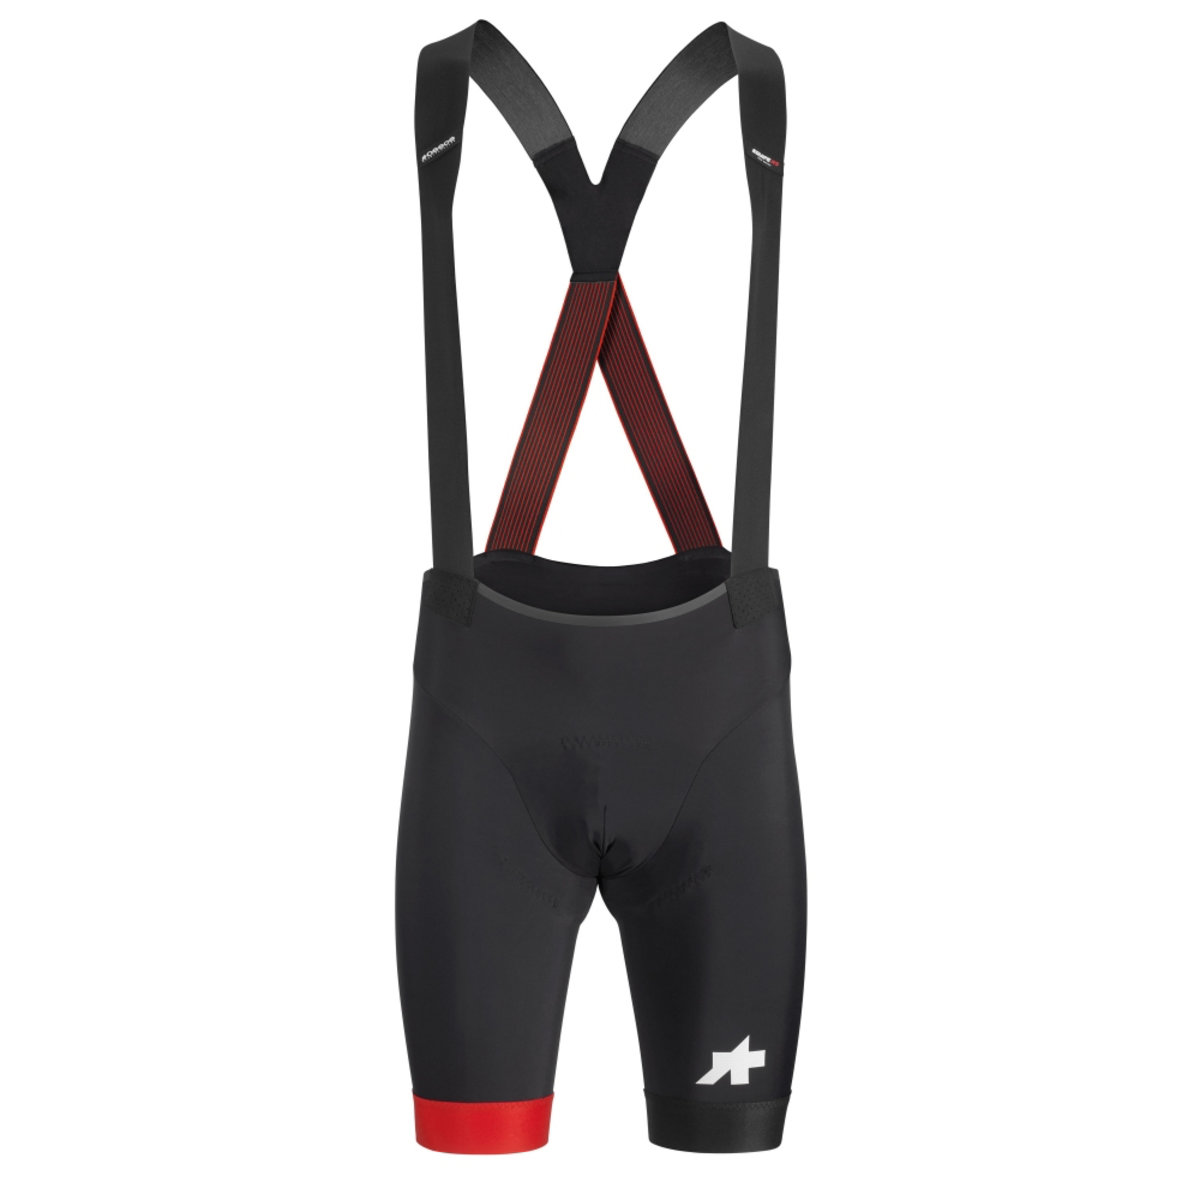 Велотрусы ASSOS Equipe RS Bib Shorts S9 National Red, на лямках, мужские, черные с красным, XLG